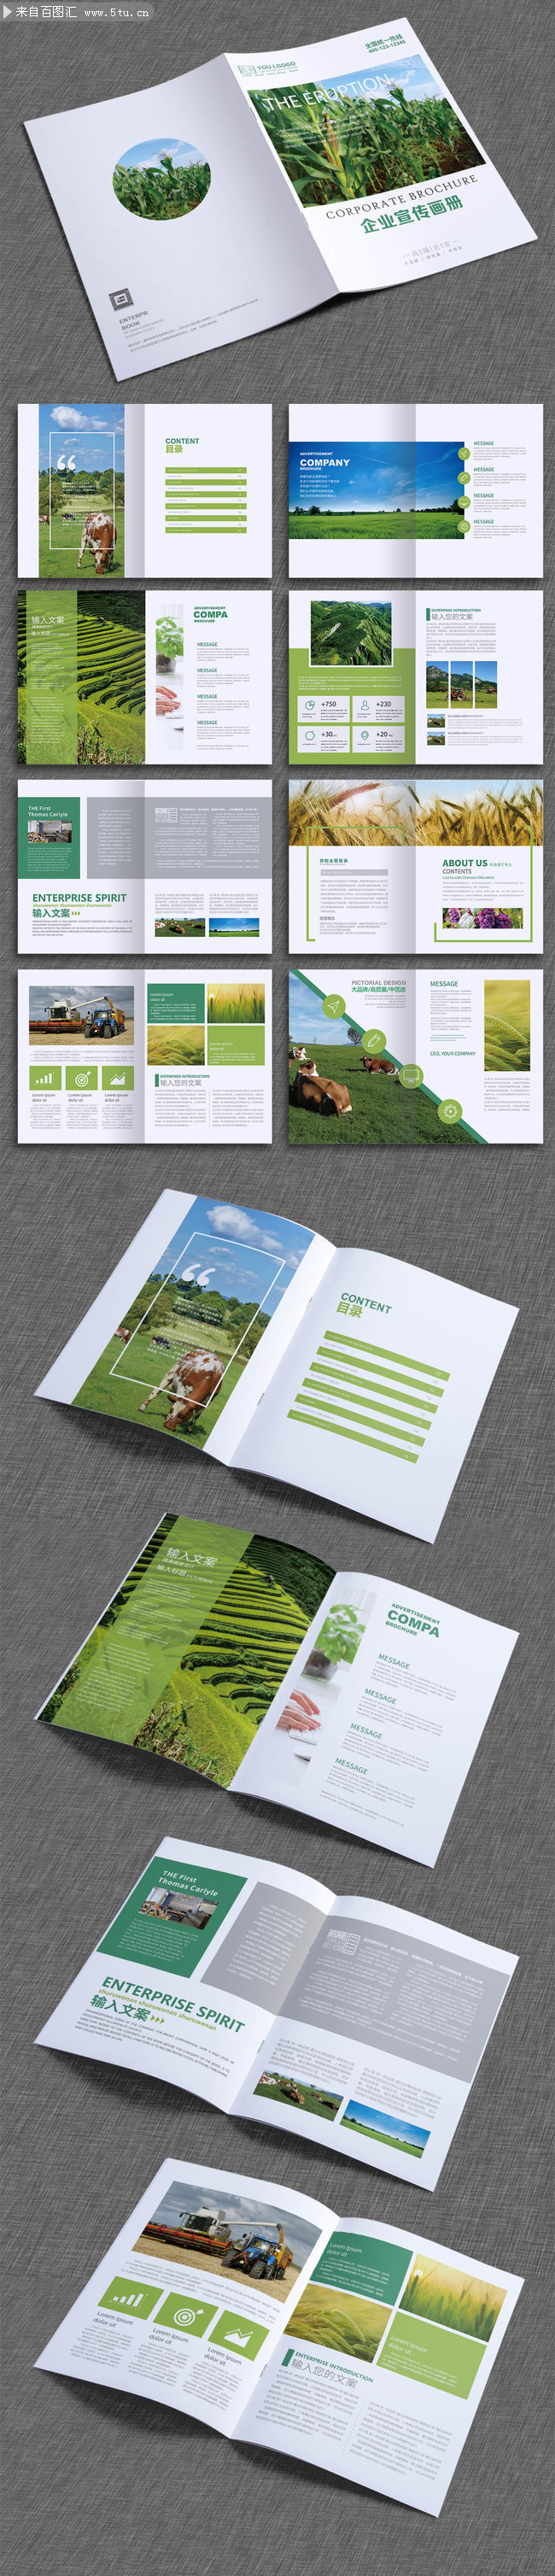 绿色环保农业宣传画册版式设计